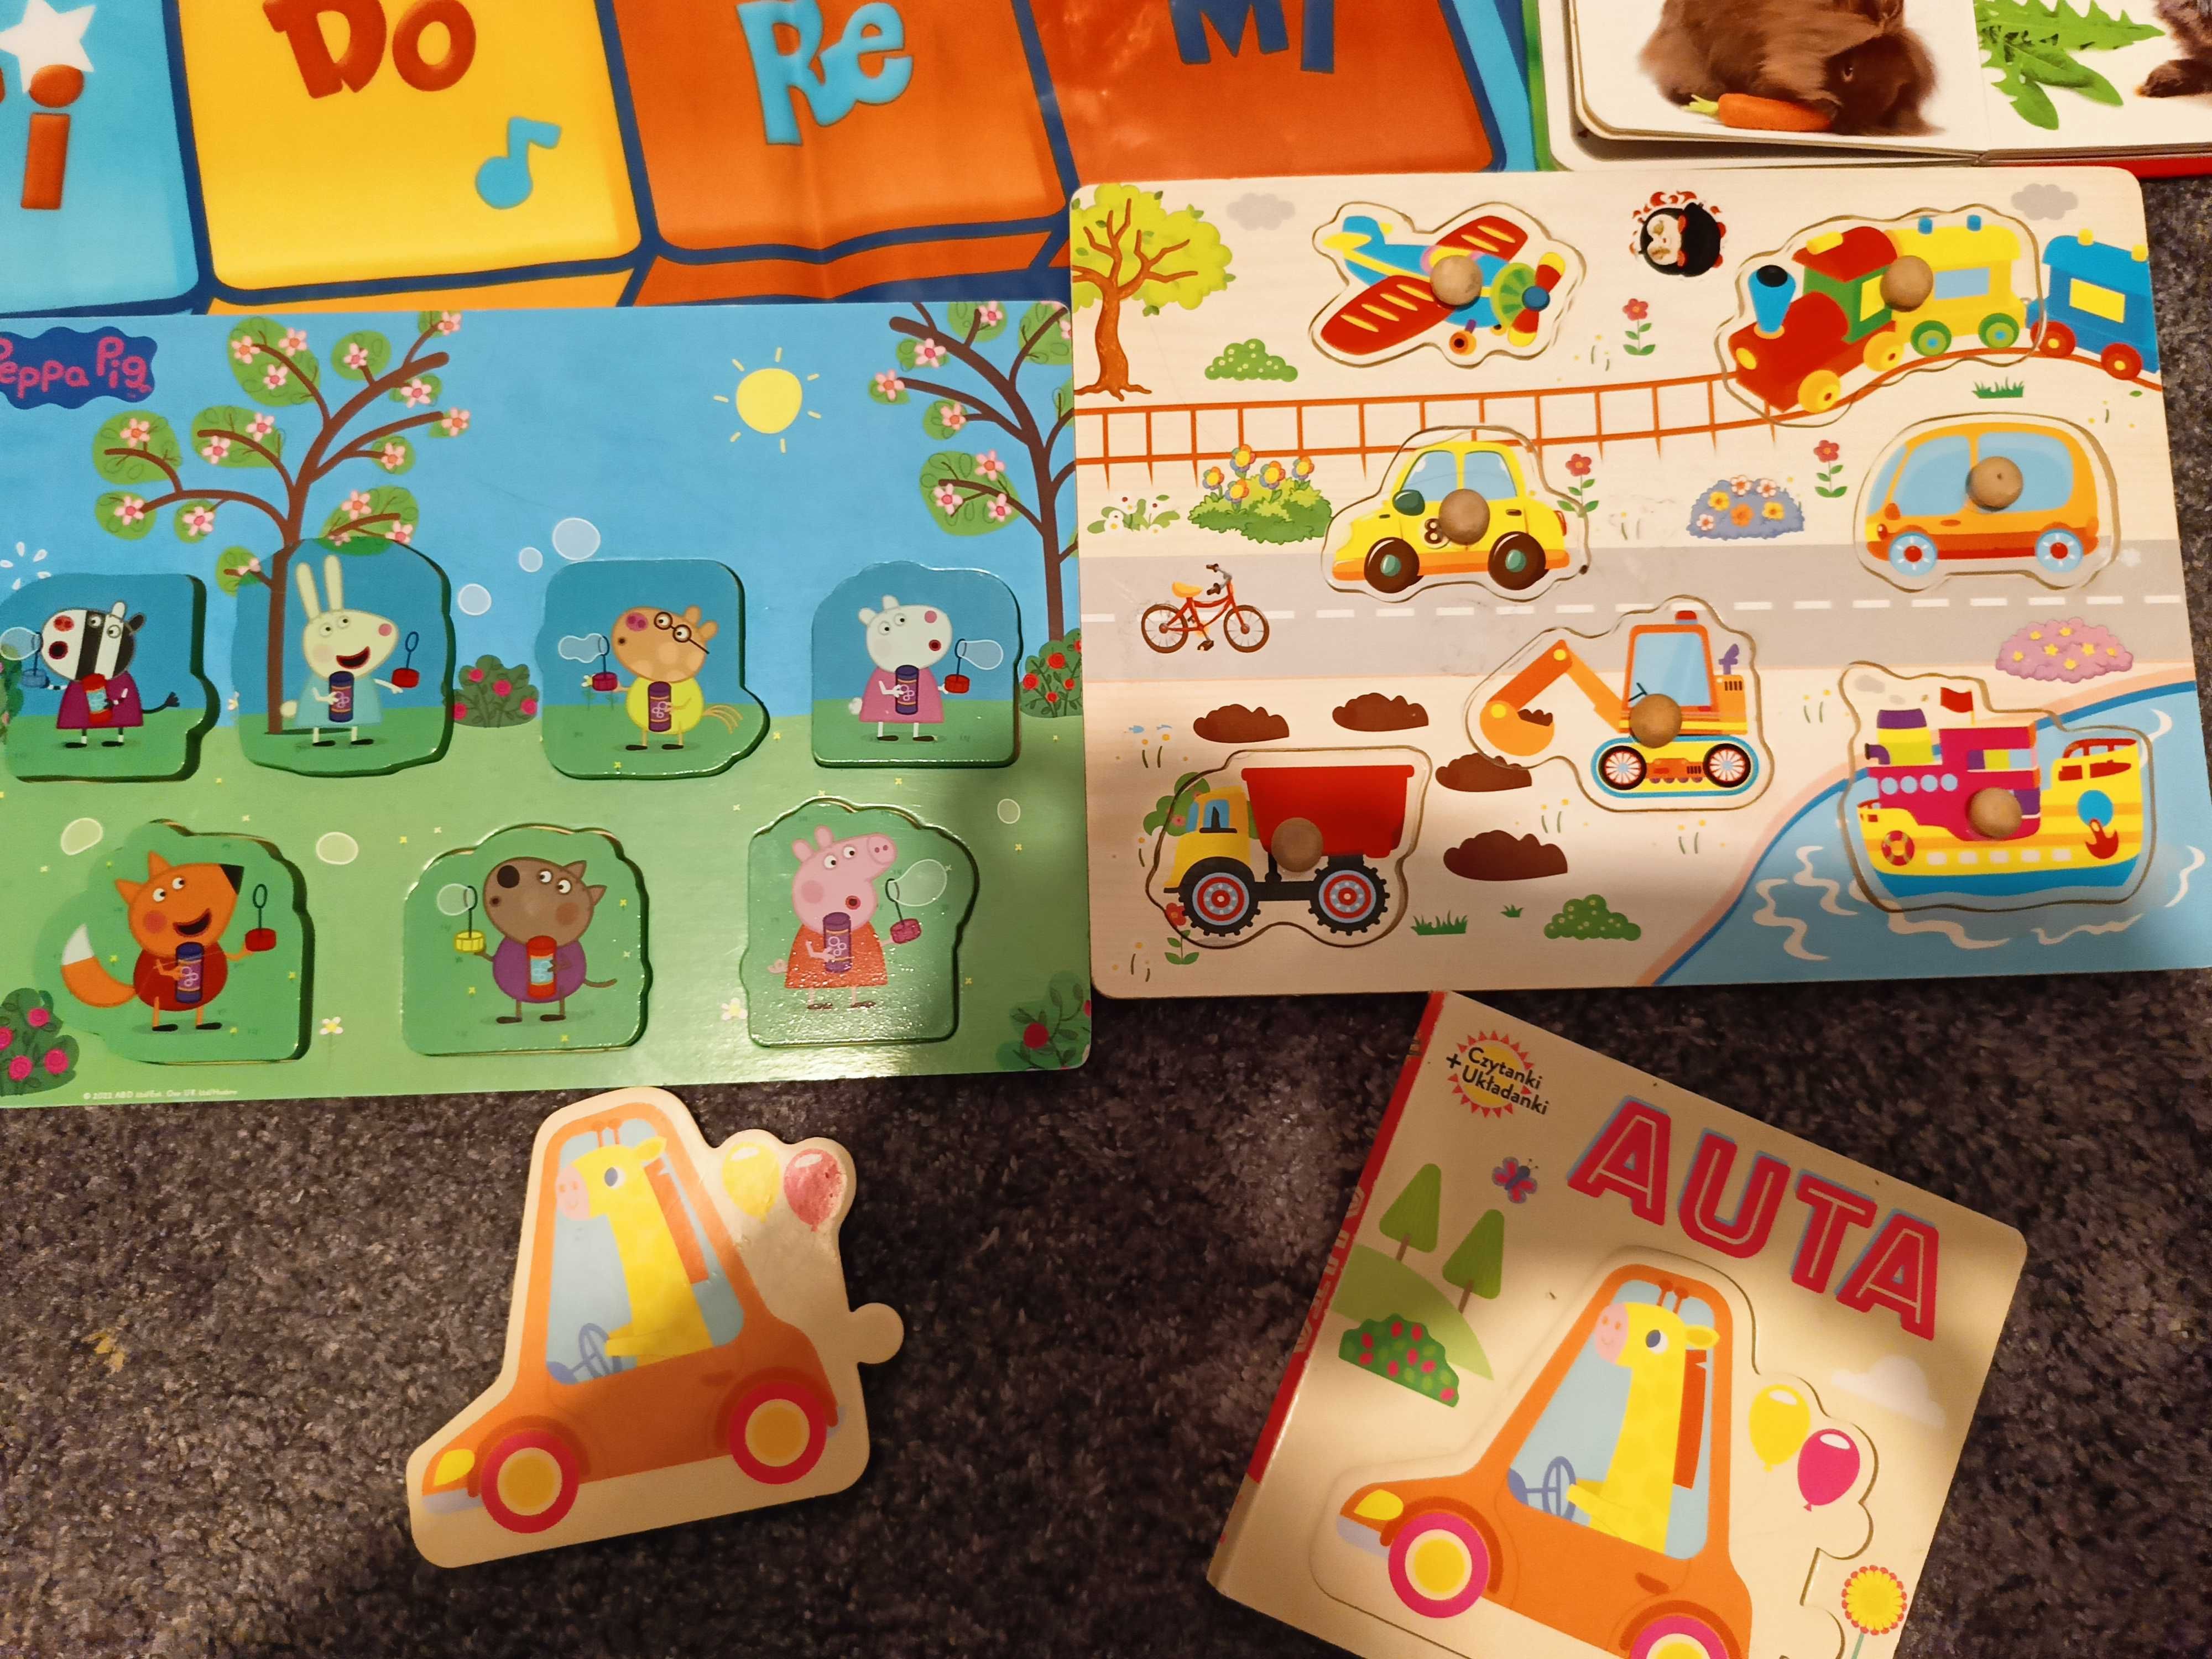 Worek zabawek,Mata smily Play, książki Zabawki dla dziecka1-3, puzzle,